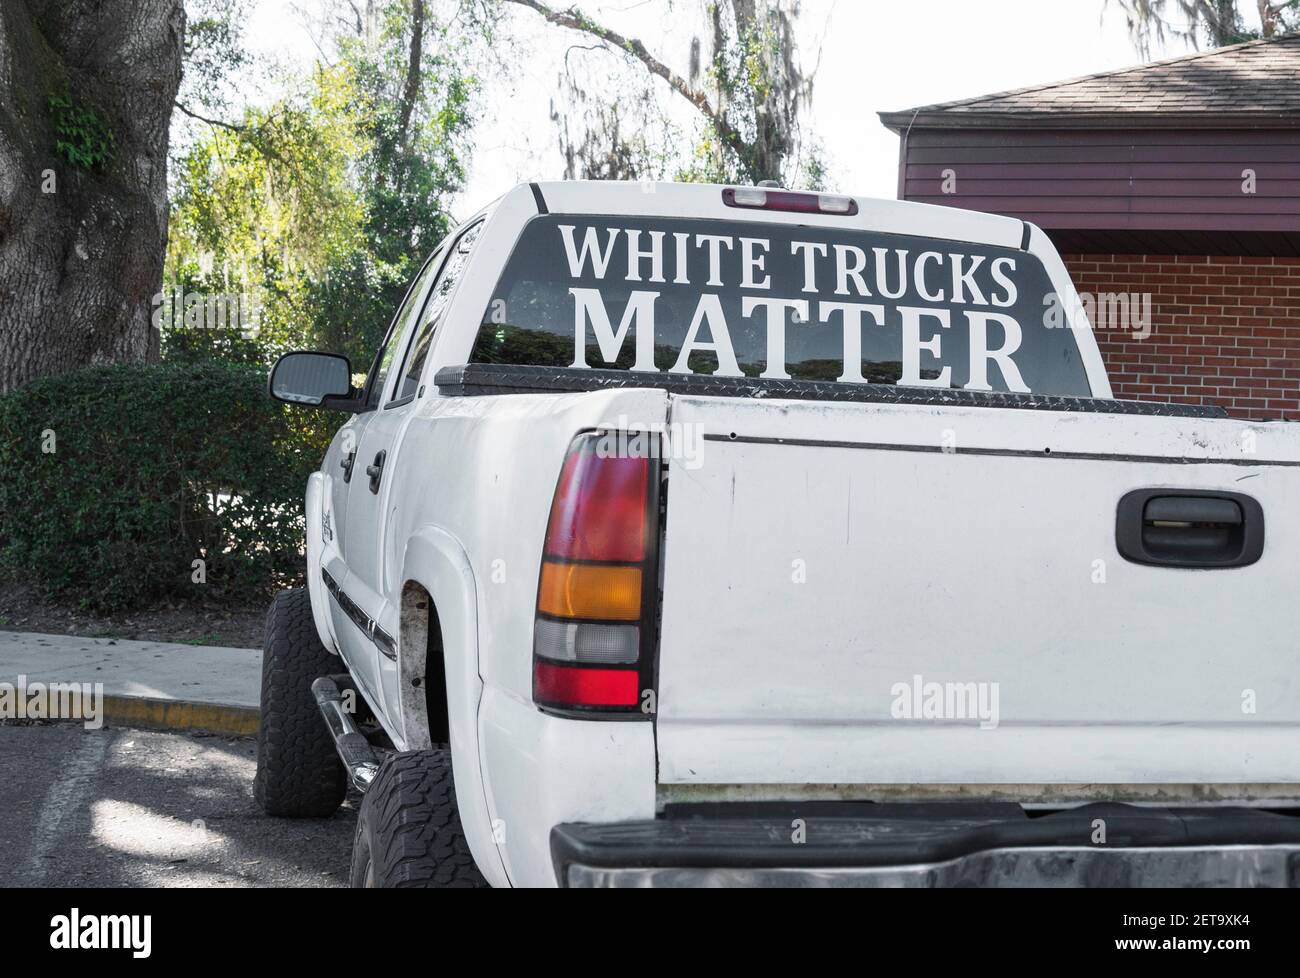 White Trucks Matter Zeichen in der hinteren Fenster eines Pickup-LKW in Nord-Florida, als Antwort auf Black Lives Matter Bewegung Stockfoto